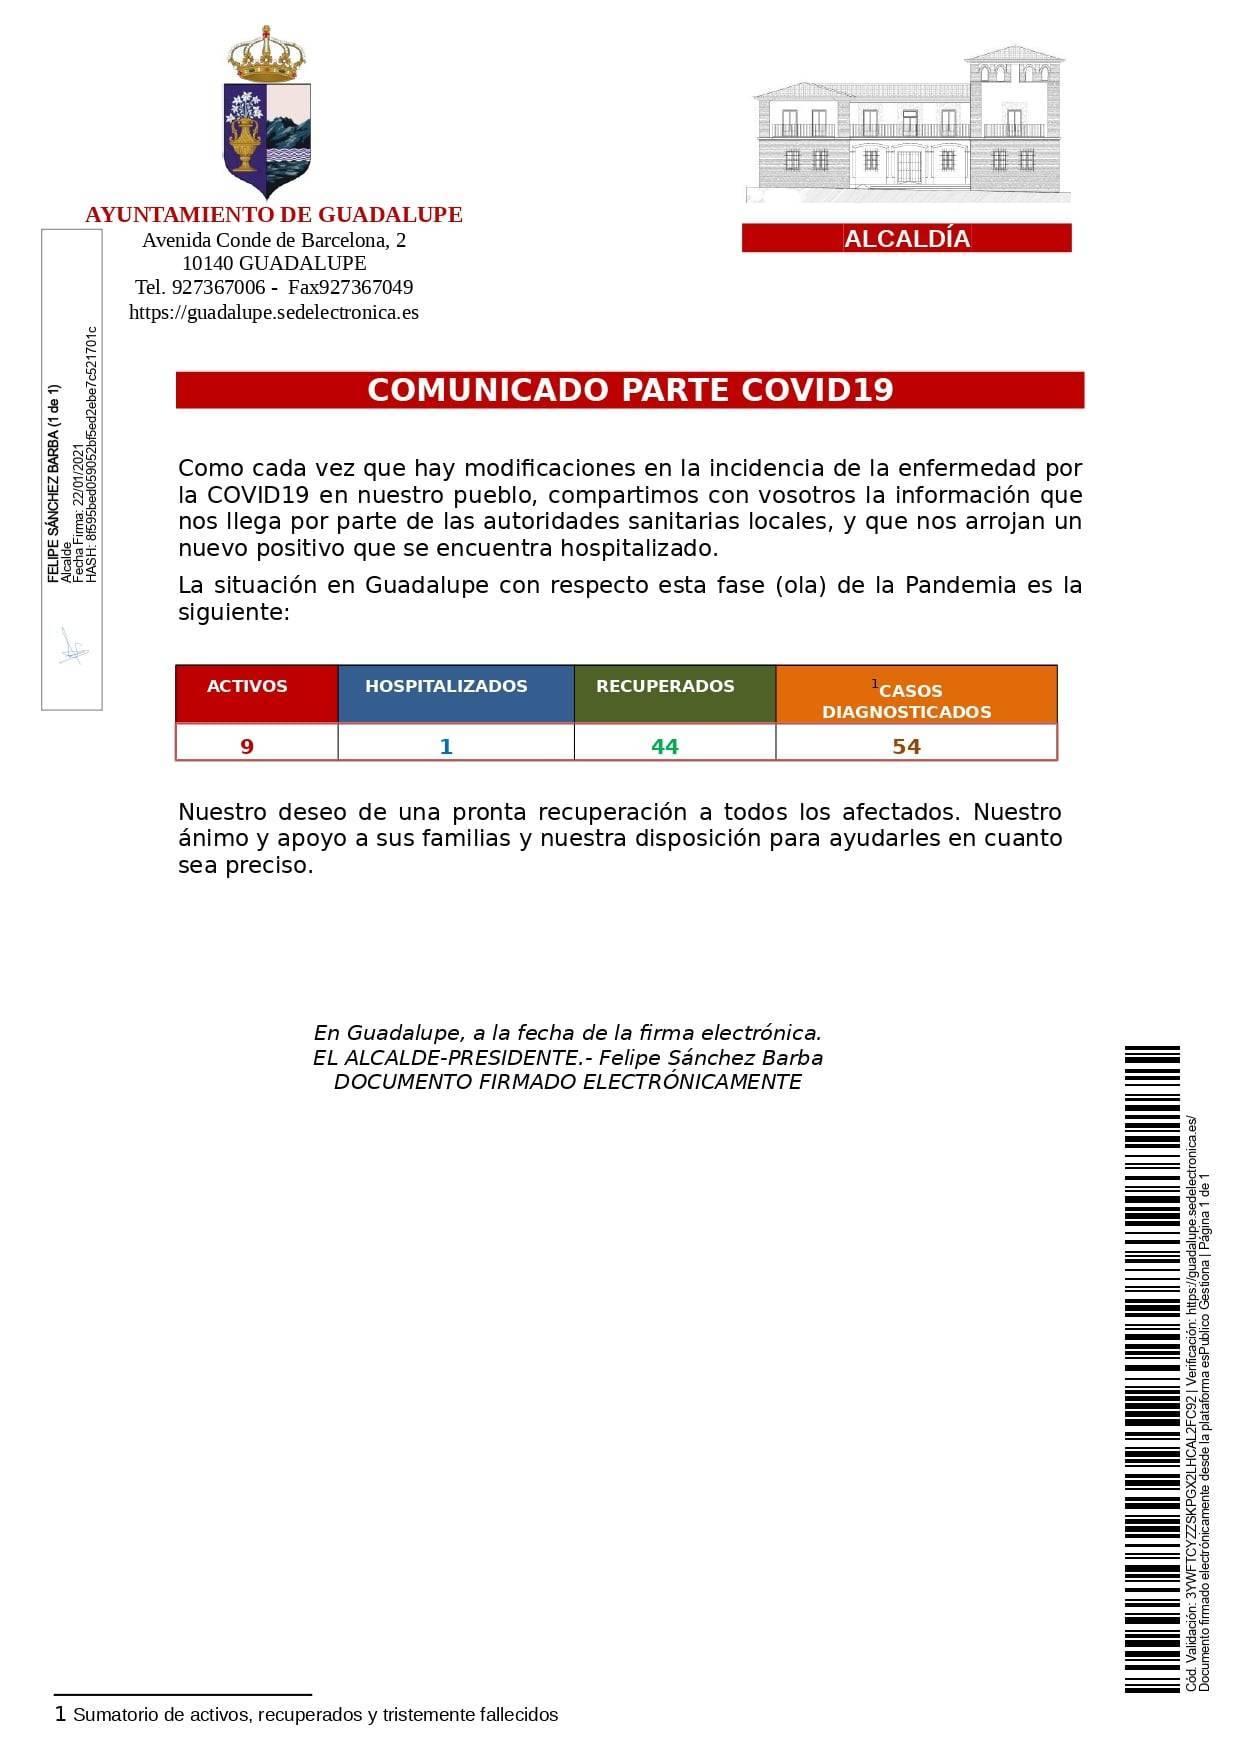 Nuevo caso positivo y 3 altas de COVID-19 (enero 2021) - Guadalupe (Cáceres) 1